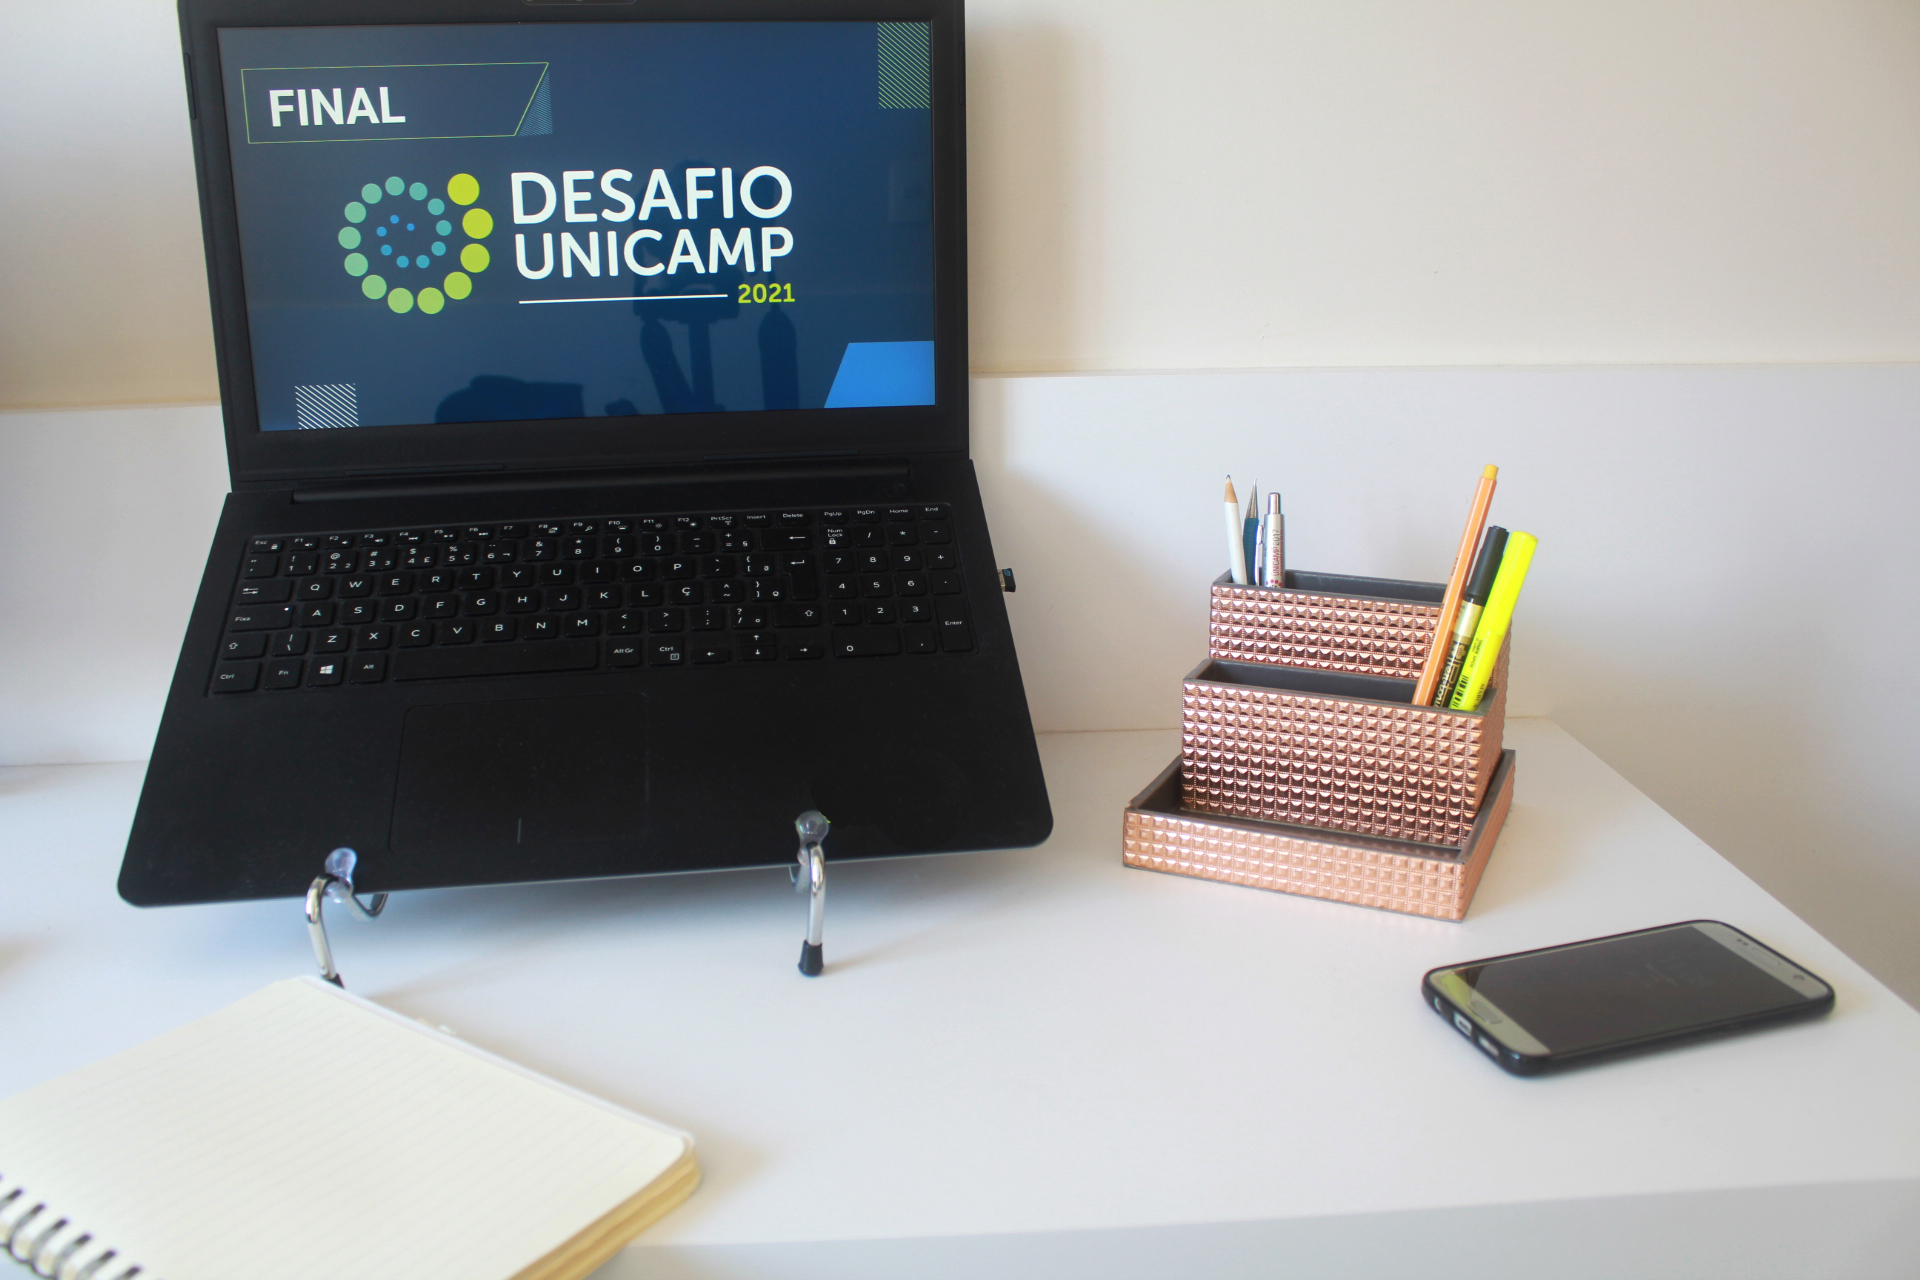 Mesa com computador escrito Final Desafio Unicamp, caderno, porta-lápis e celular